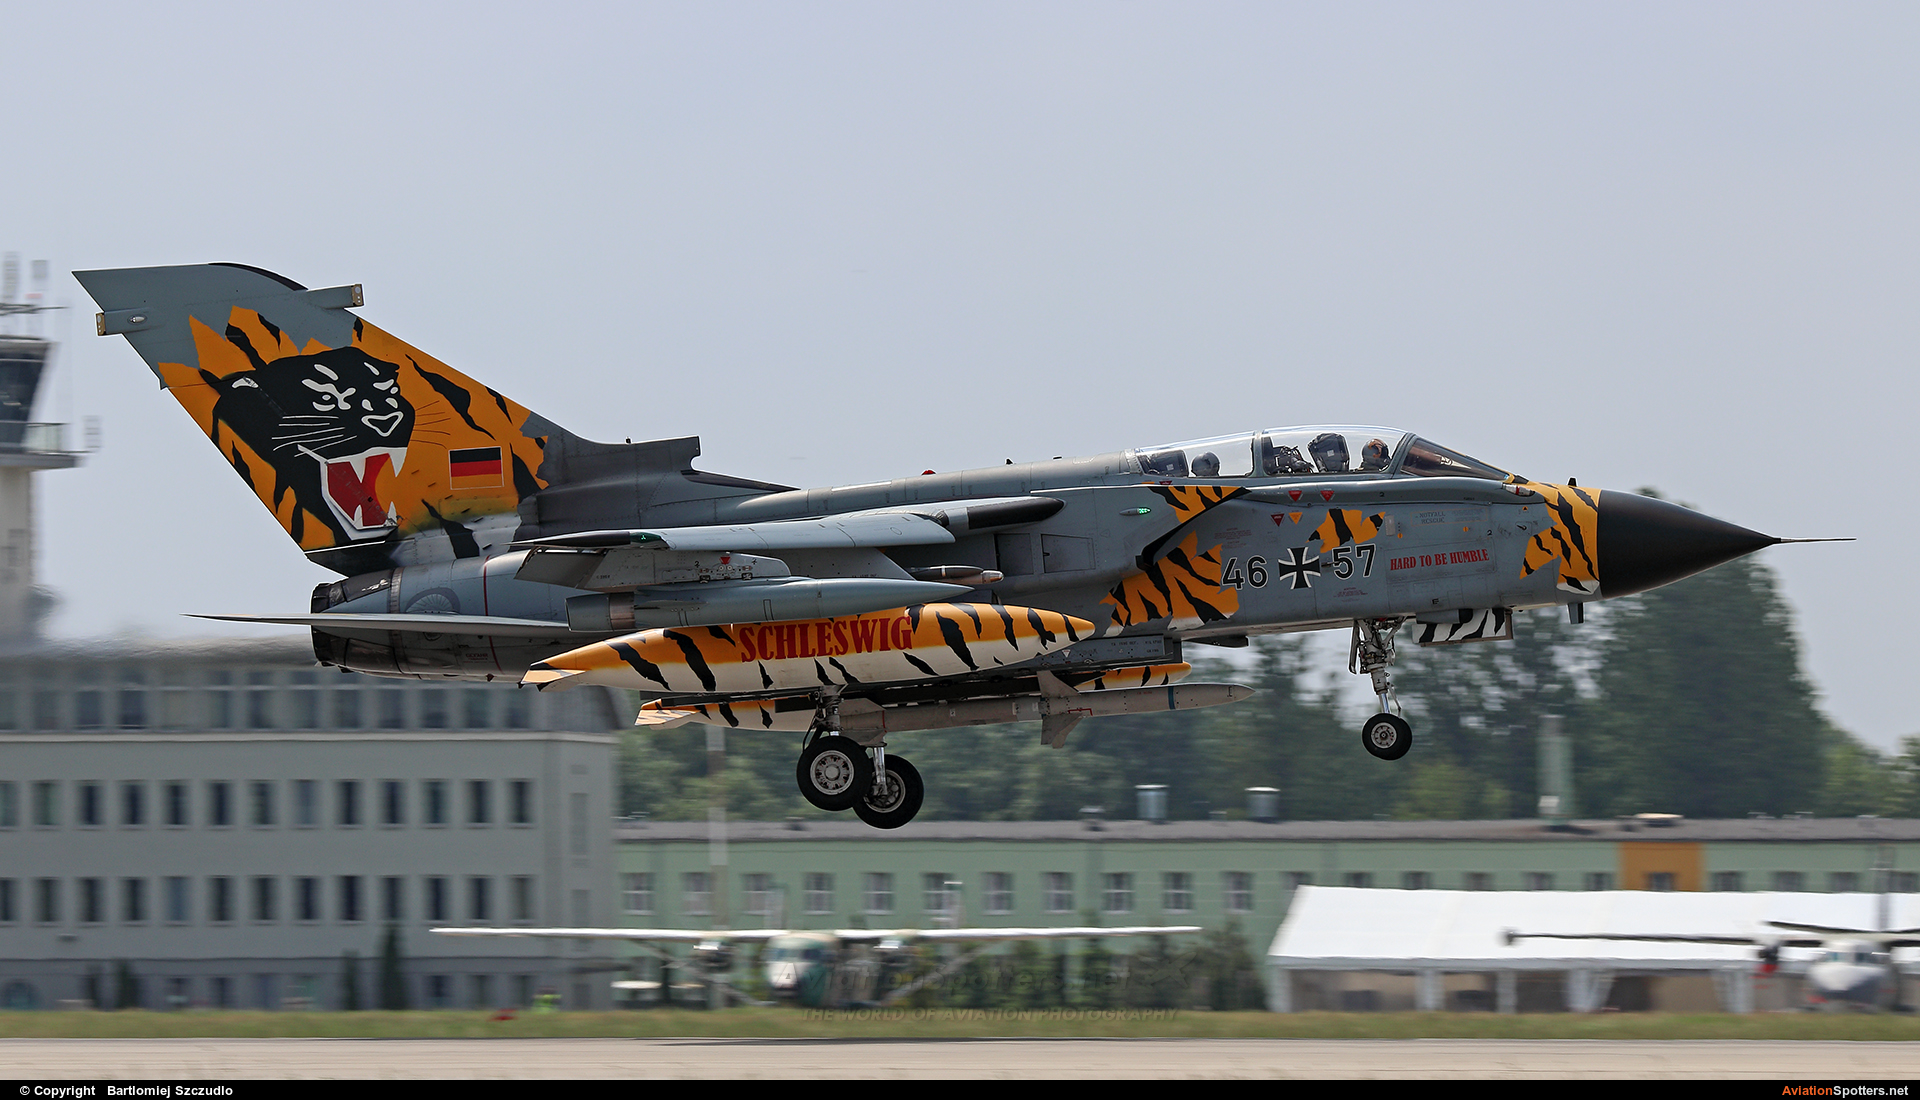 Germany - Air Force  -  Tornado - ECR  (46+57) By Bartlomiej Szczudlo  (BartekSzczudlo)